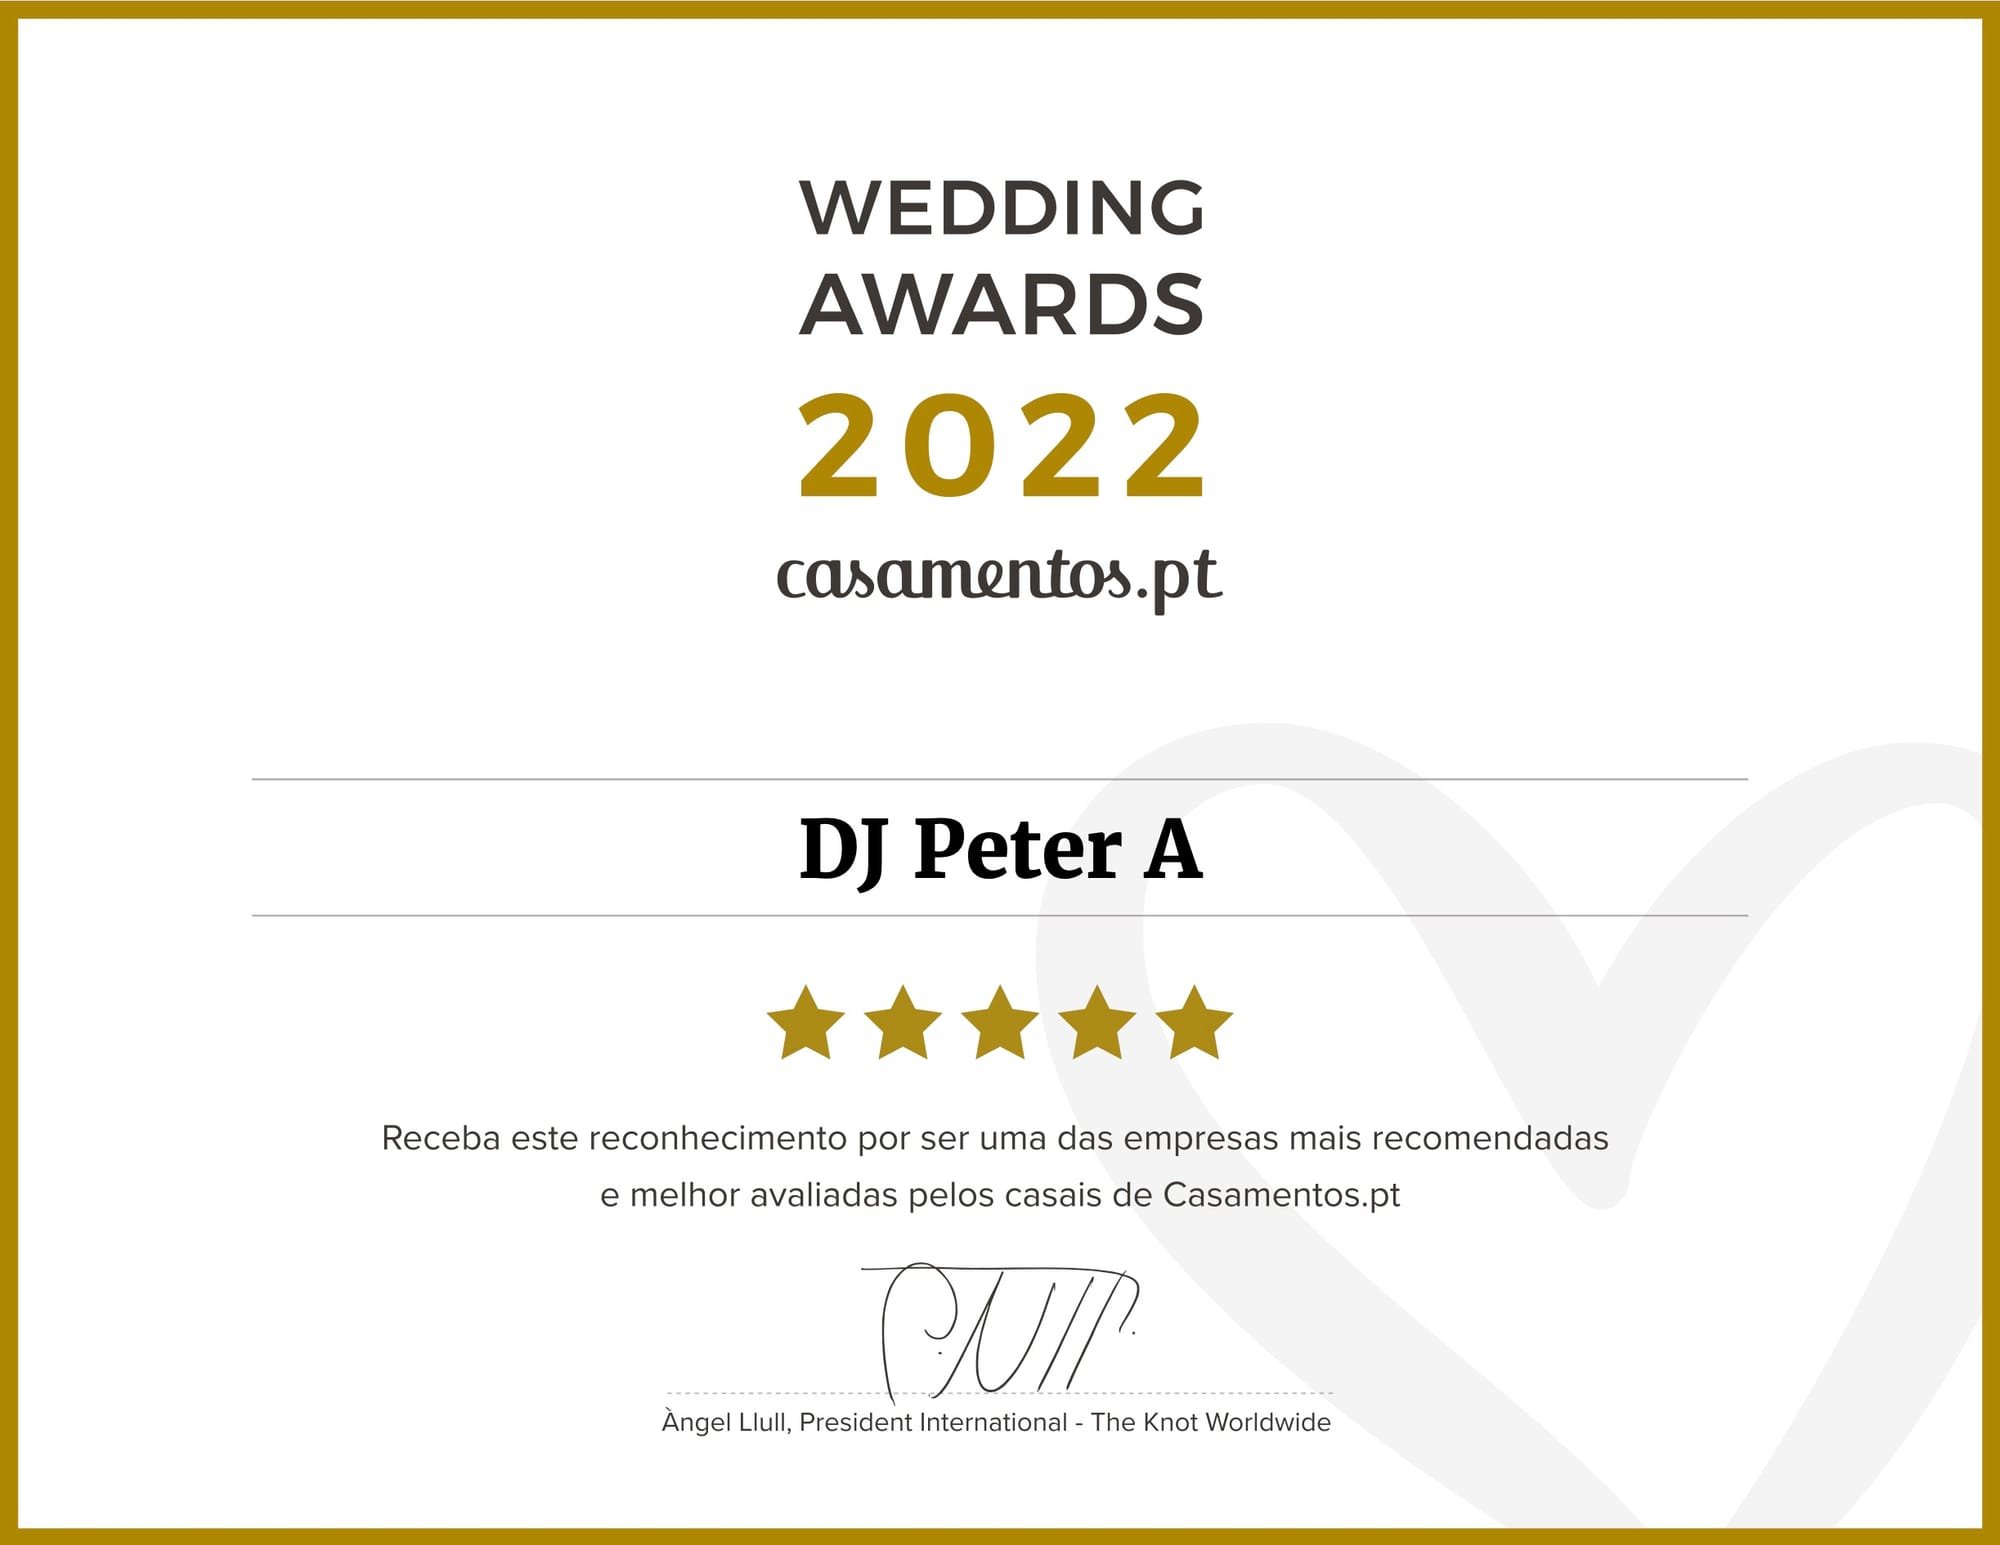 Wedding Awards 2022 - DJ Peter A - Casamentos.pt 🏆